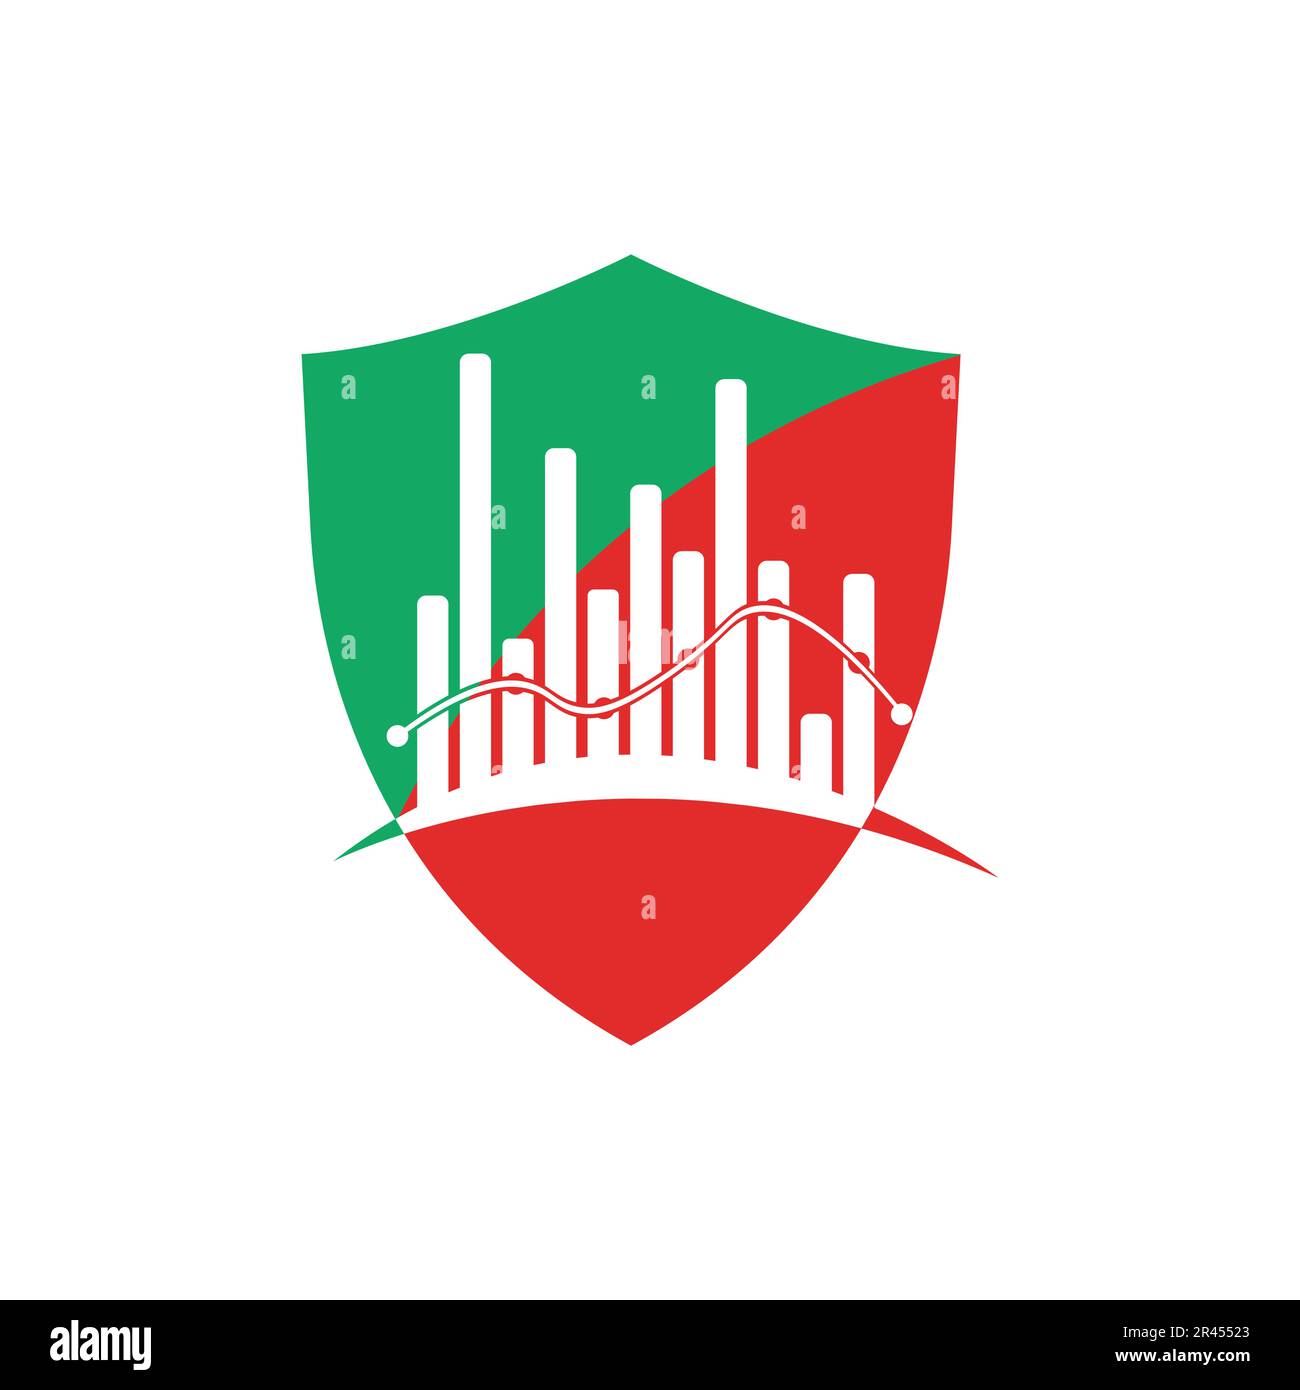 Design des Finance Logos in Grün und Rot in einer Form der Abschirmung. Stock Vektor